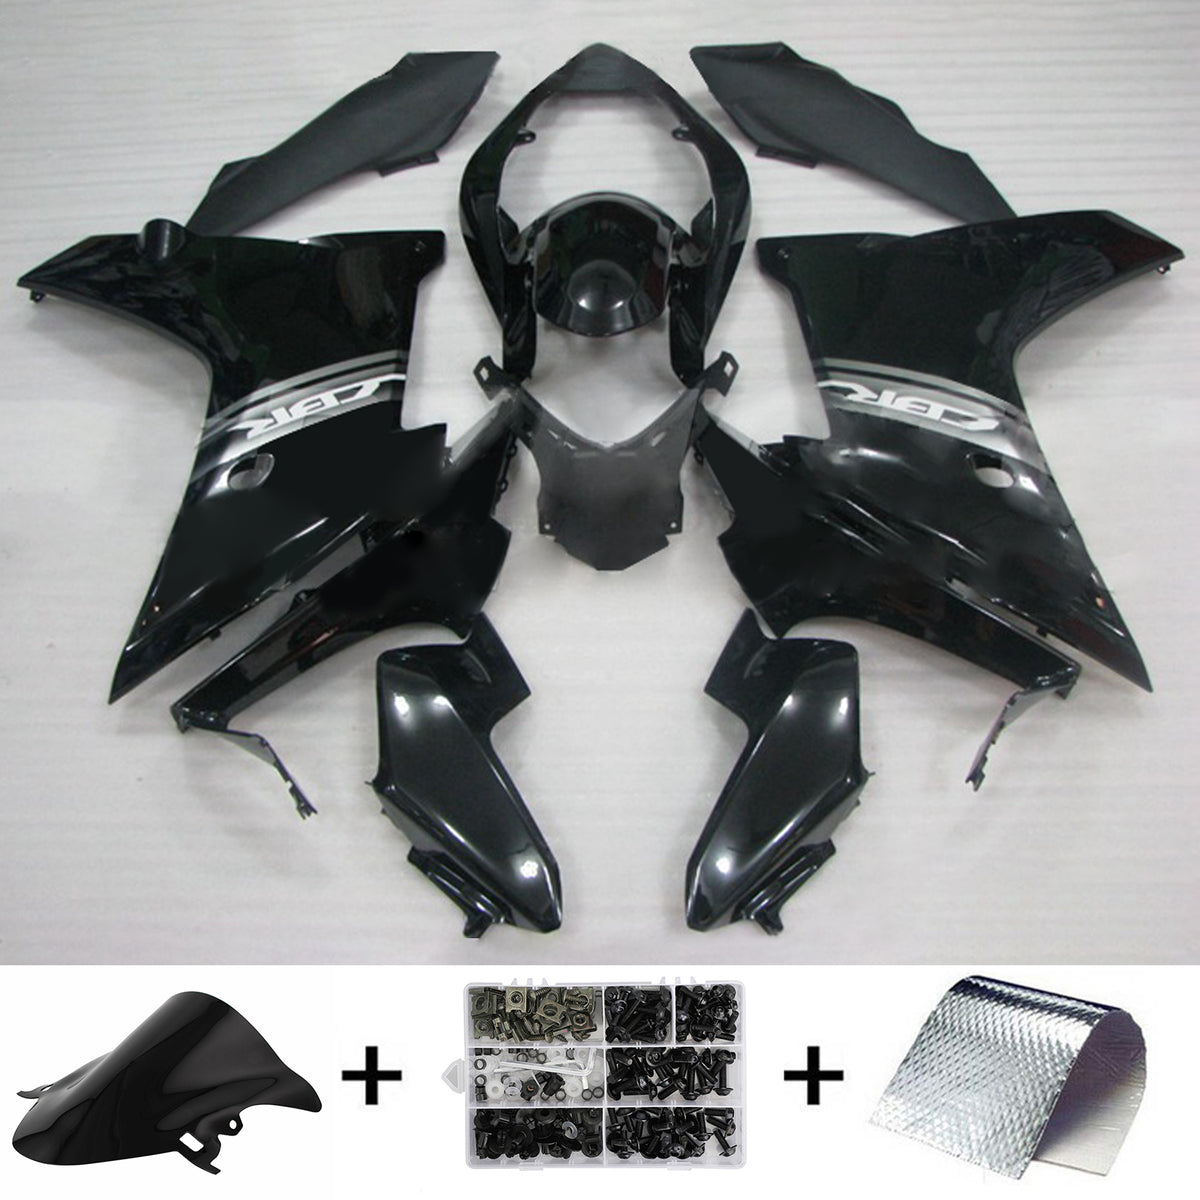 Amotopart 2011-2013 CBR600F Honda Black Fairing Kit